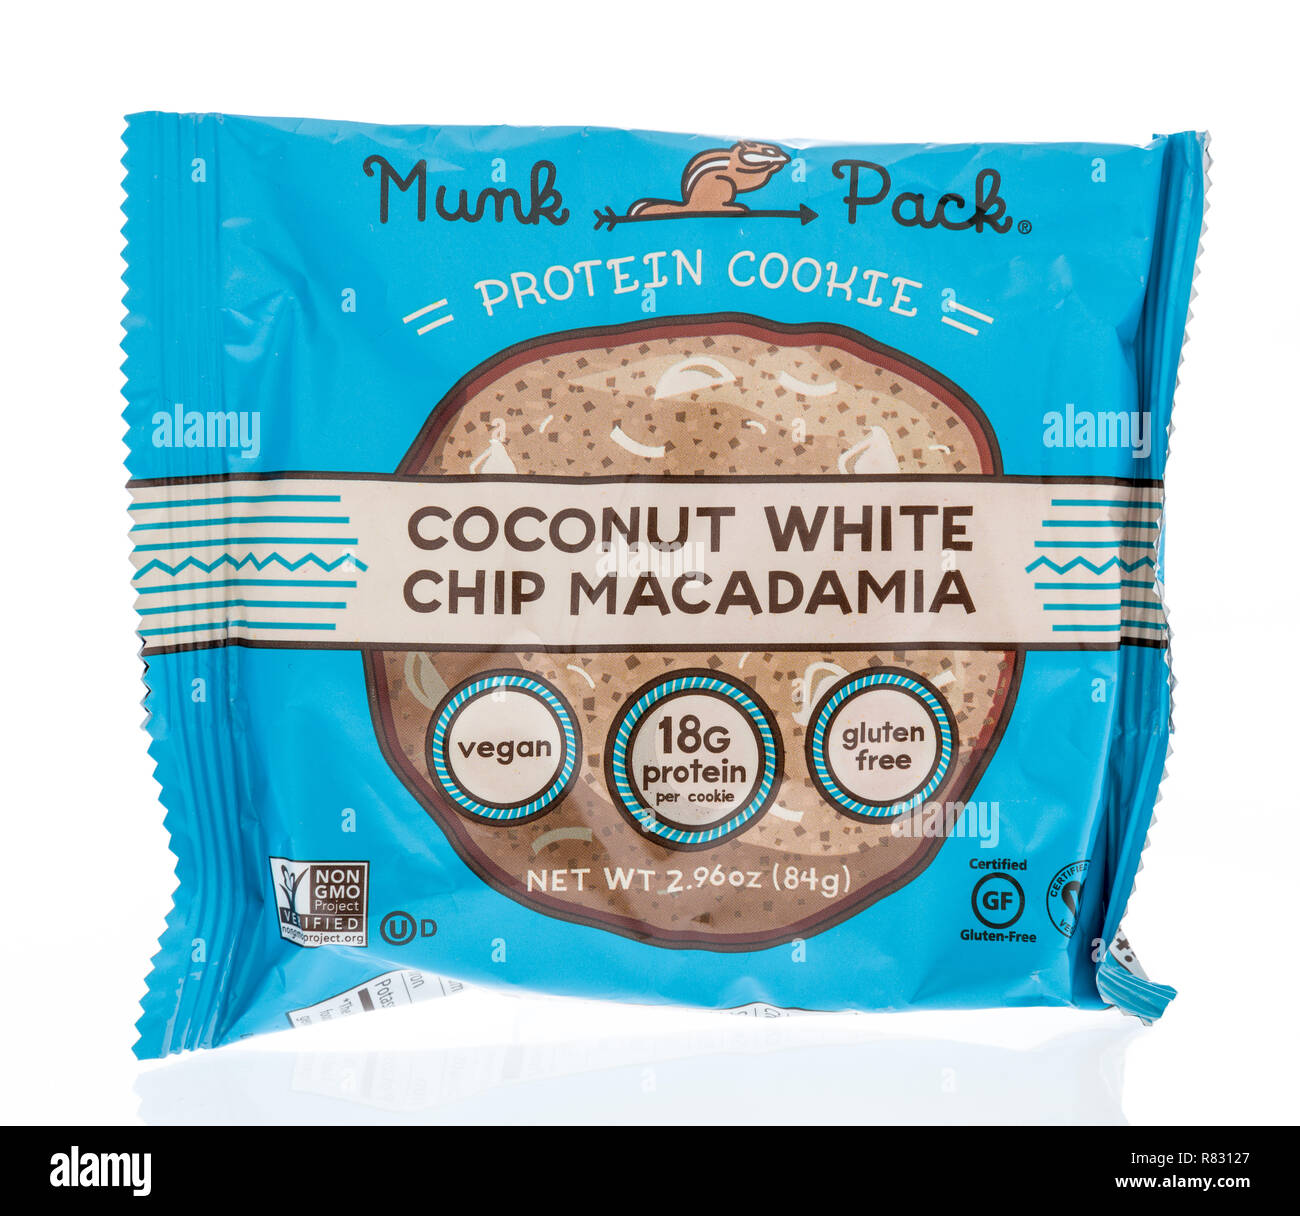 Winneconne, WI - 8. Dezember 2018: ein Paket von Munk Pack protein Cookie in Coconut white Chip macadamia Geschmack auf einem isolierten Hintergrund. Stockfoto